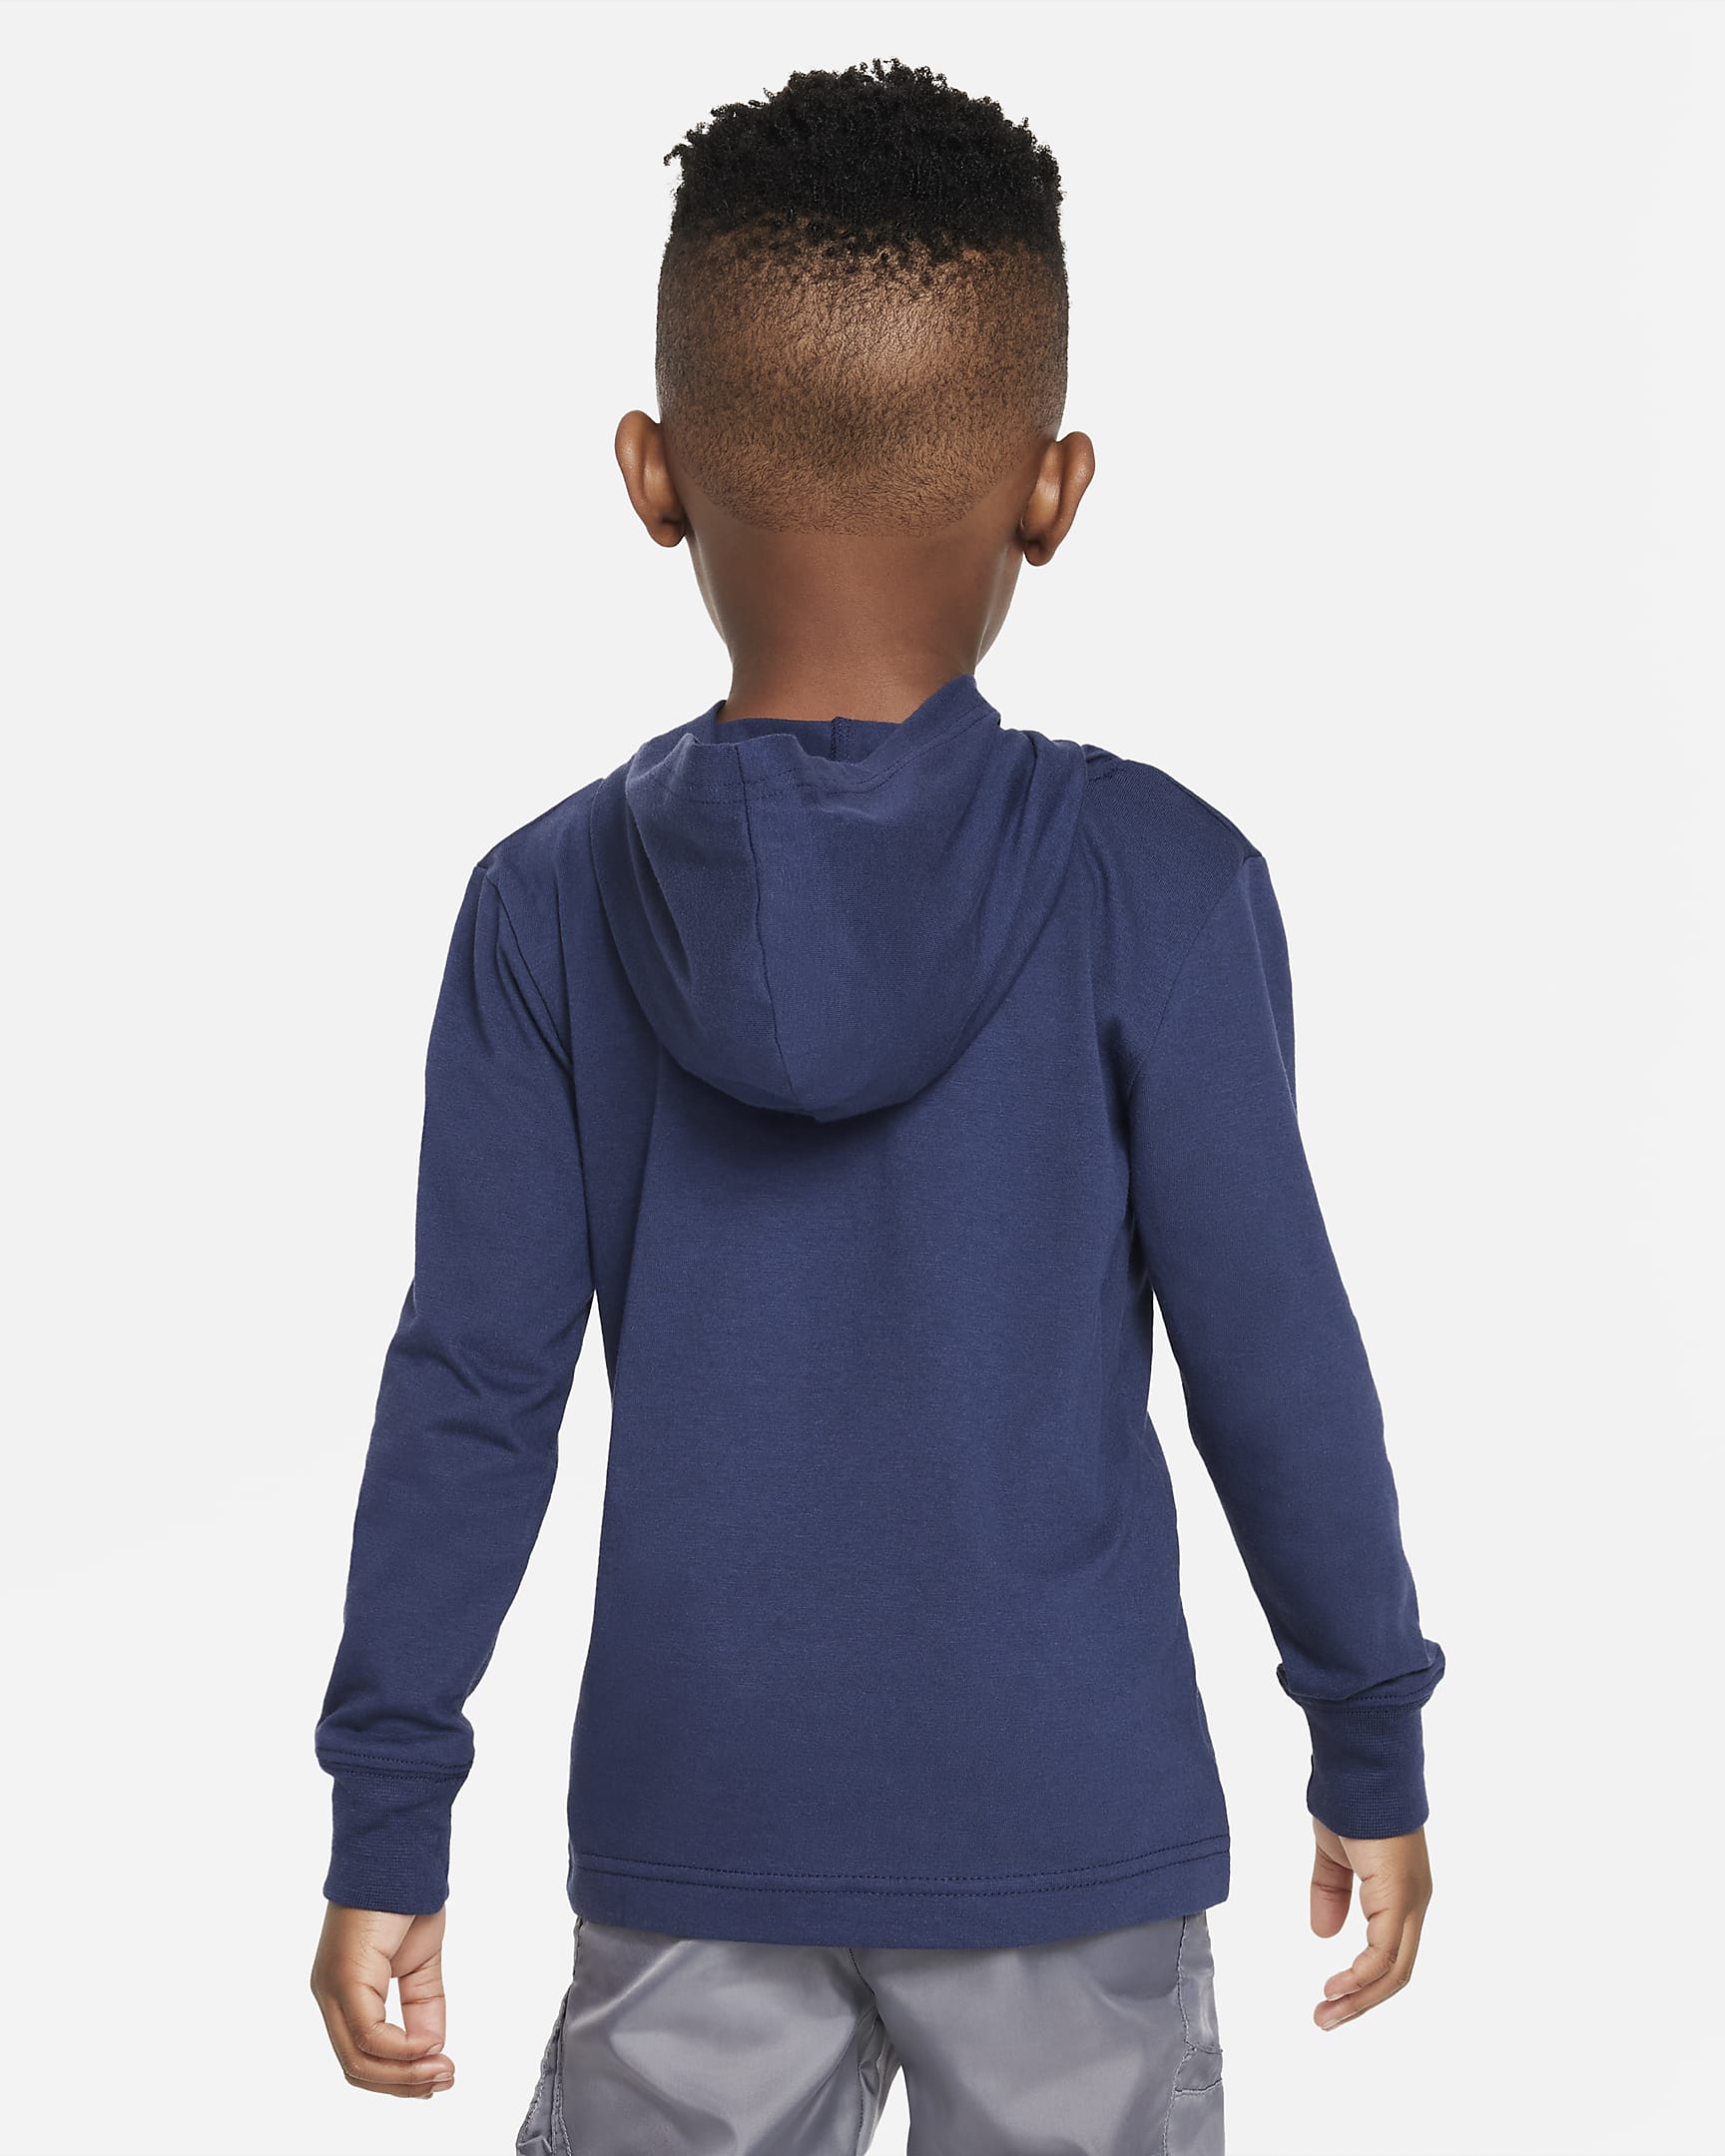 Nike Sportswear Futura Hooded Long Sleeve Tee Little Kids' T-Shirt ...